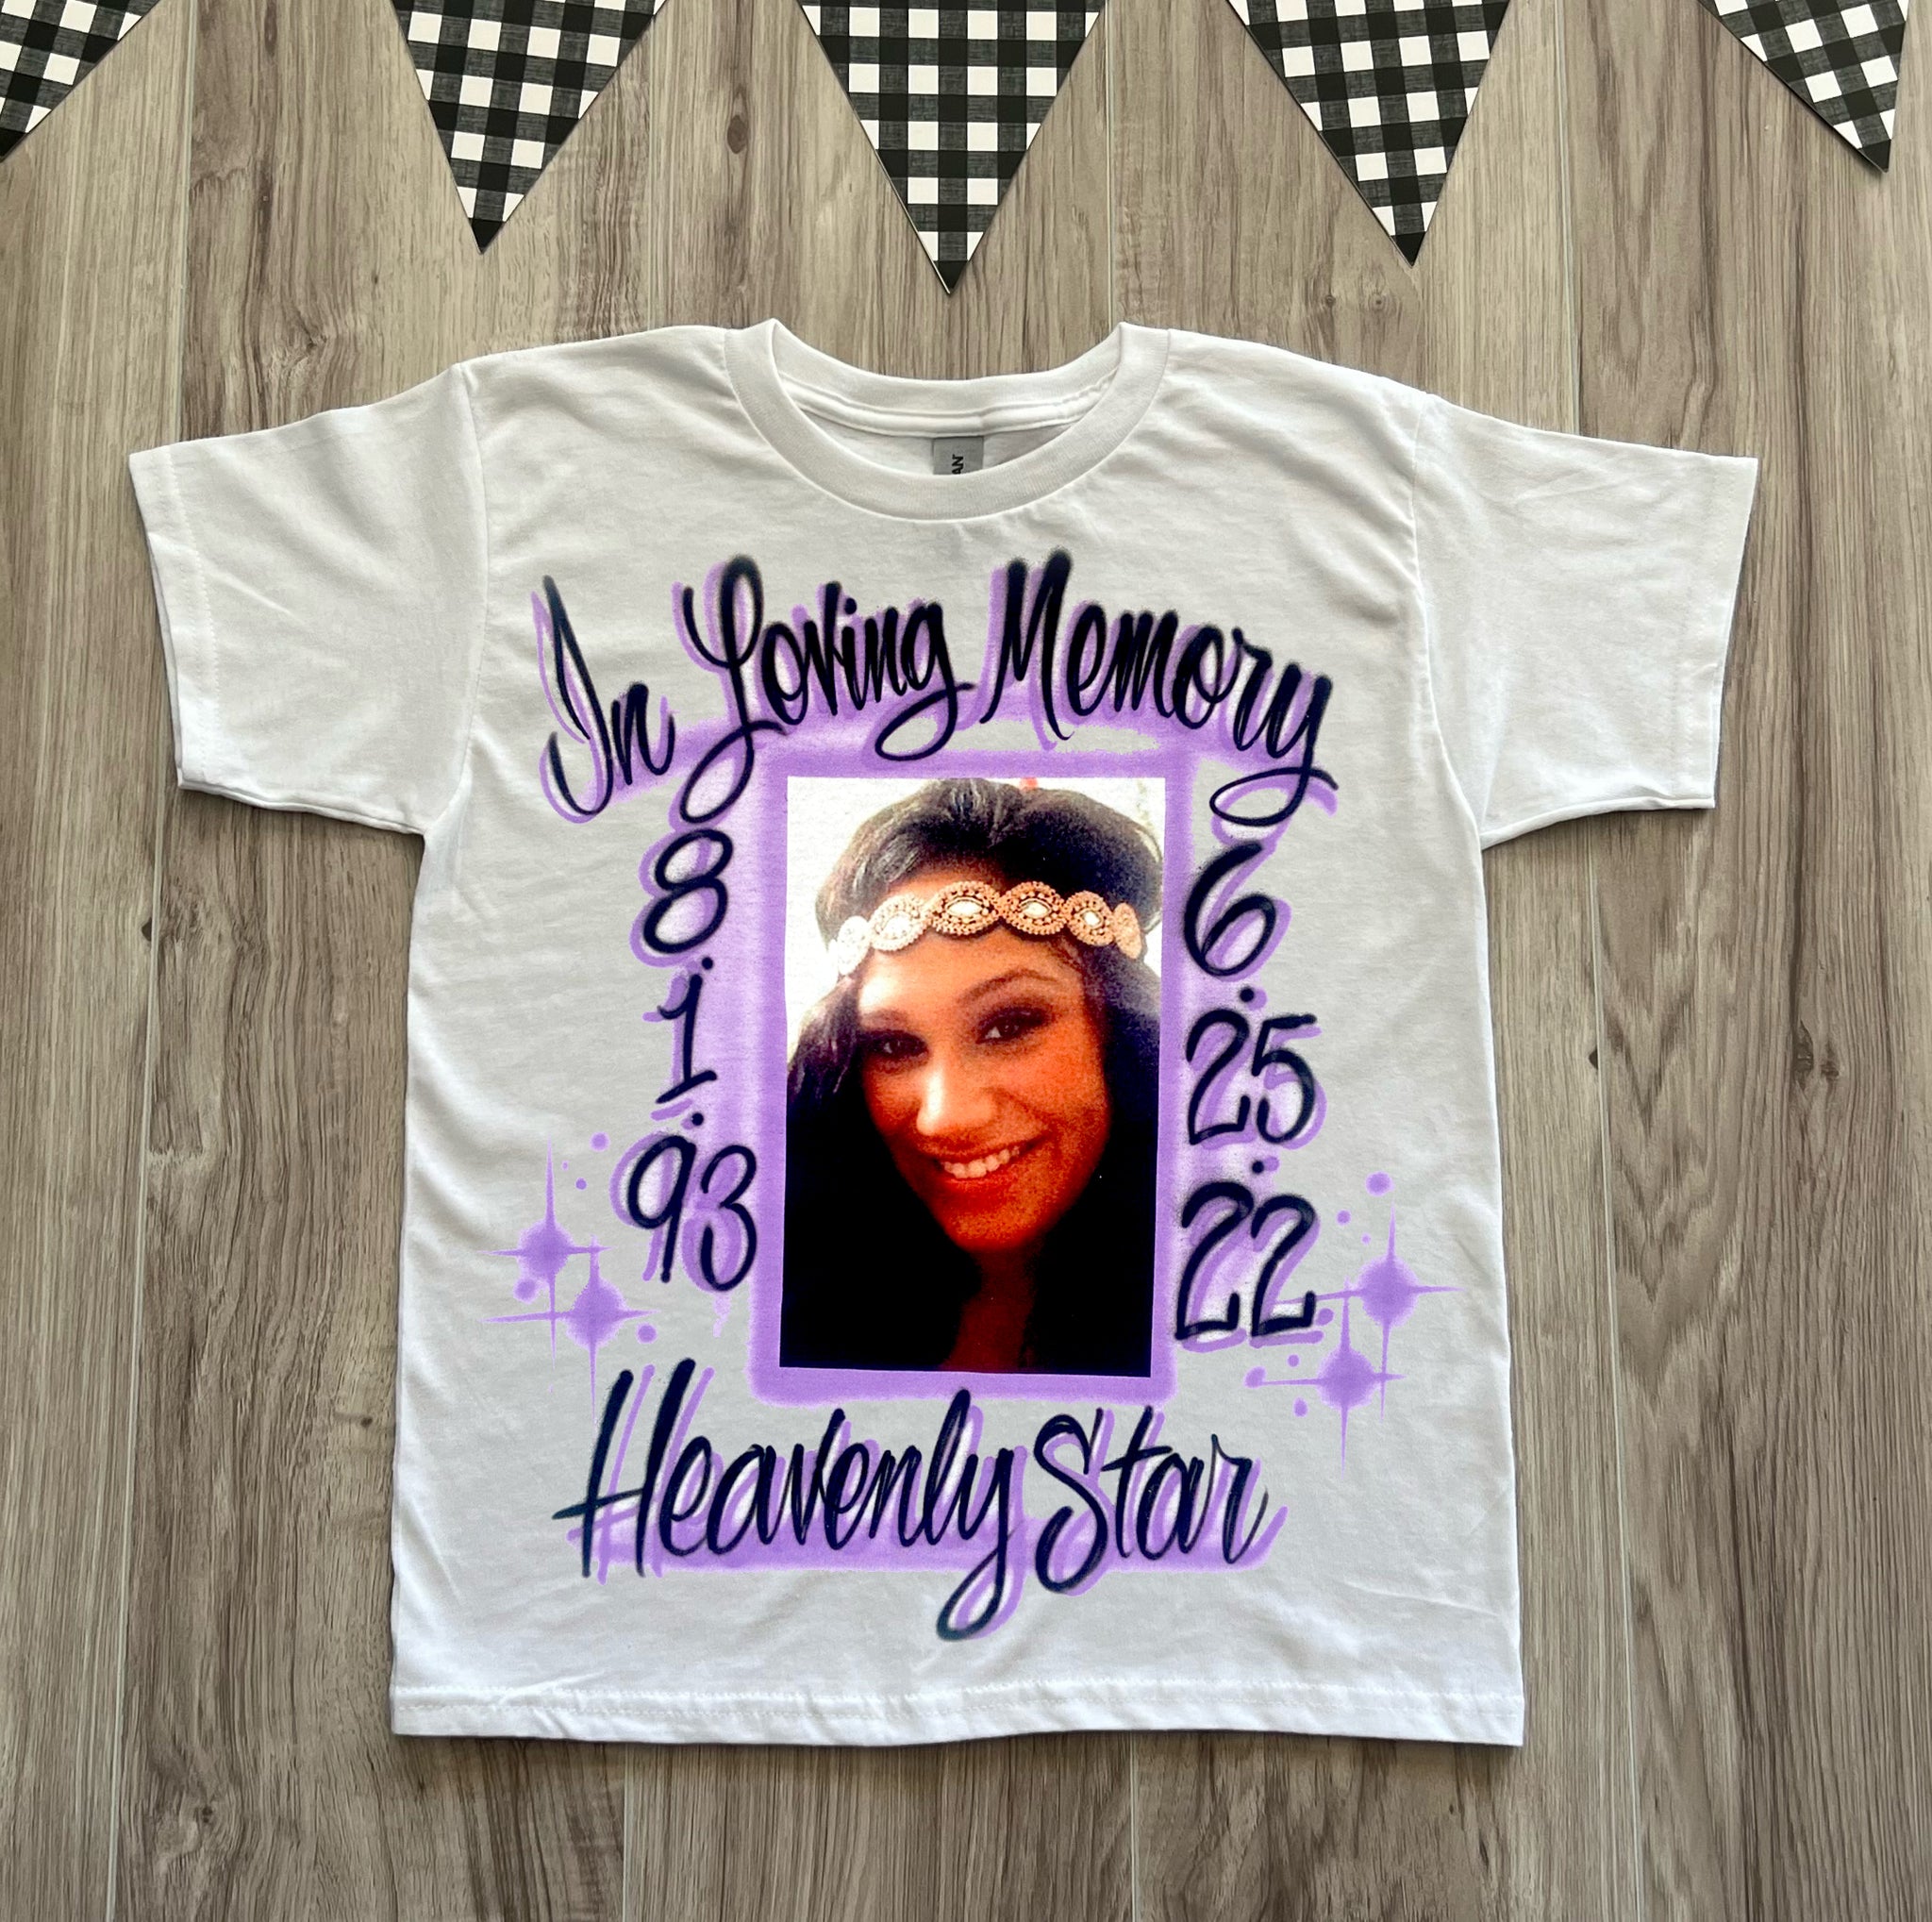 In loving Memory Shirts  Create Custom RIP Memorial Shirts